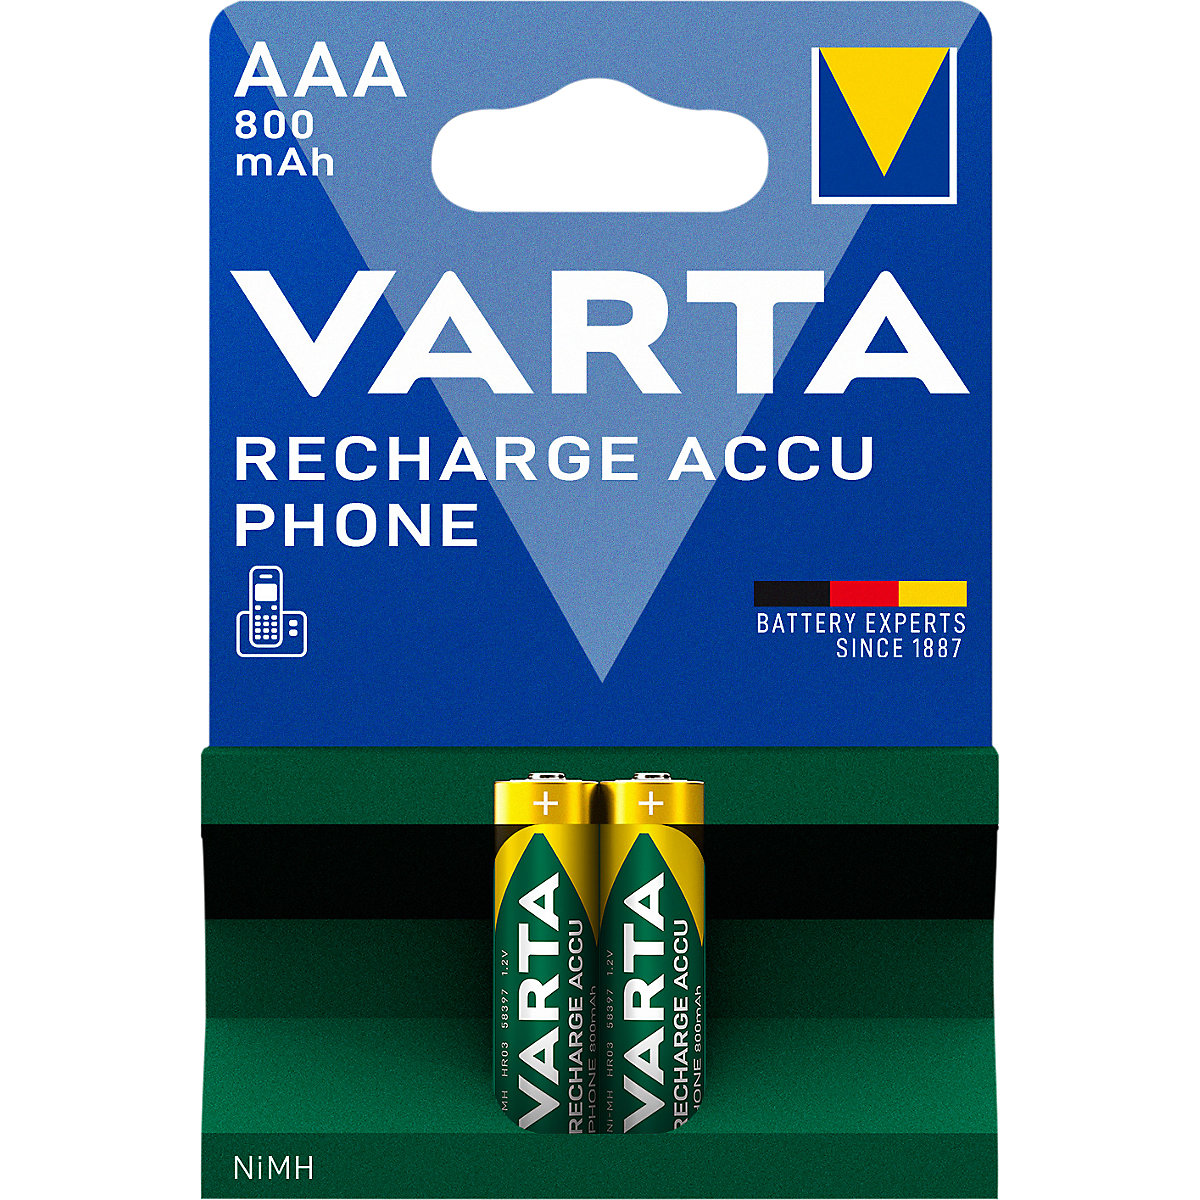 Baterija za telefon, punjiva - VARTA